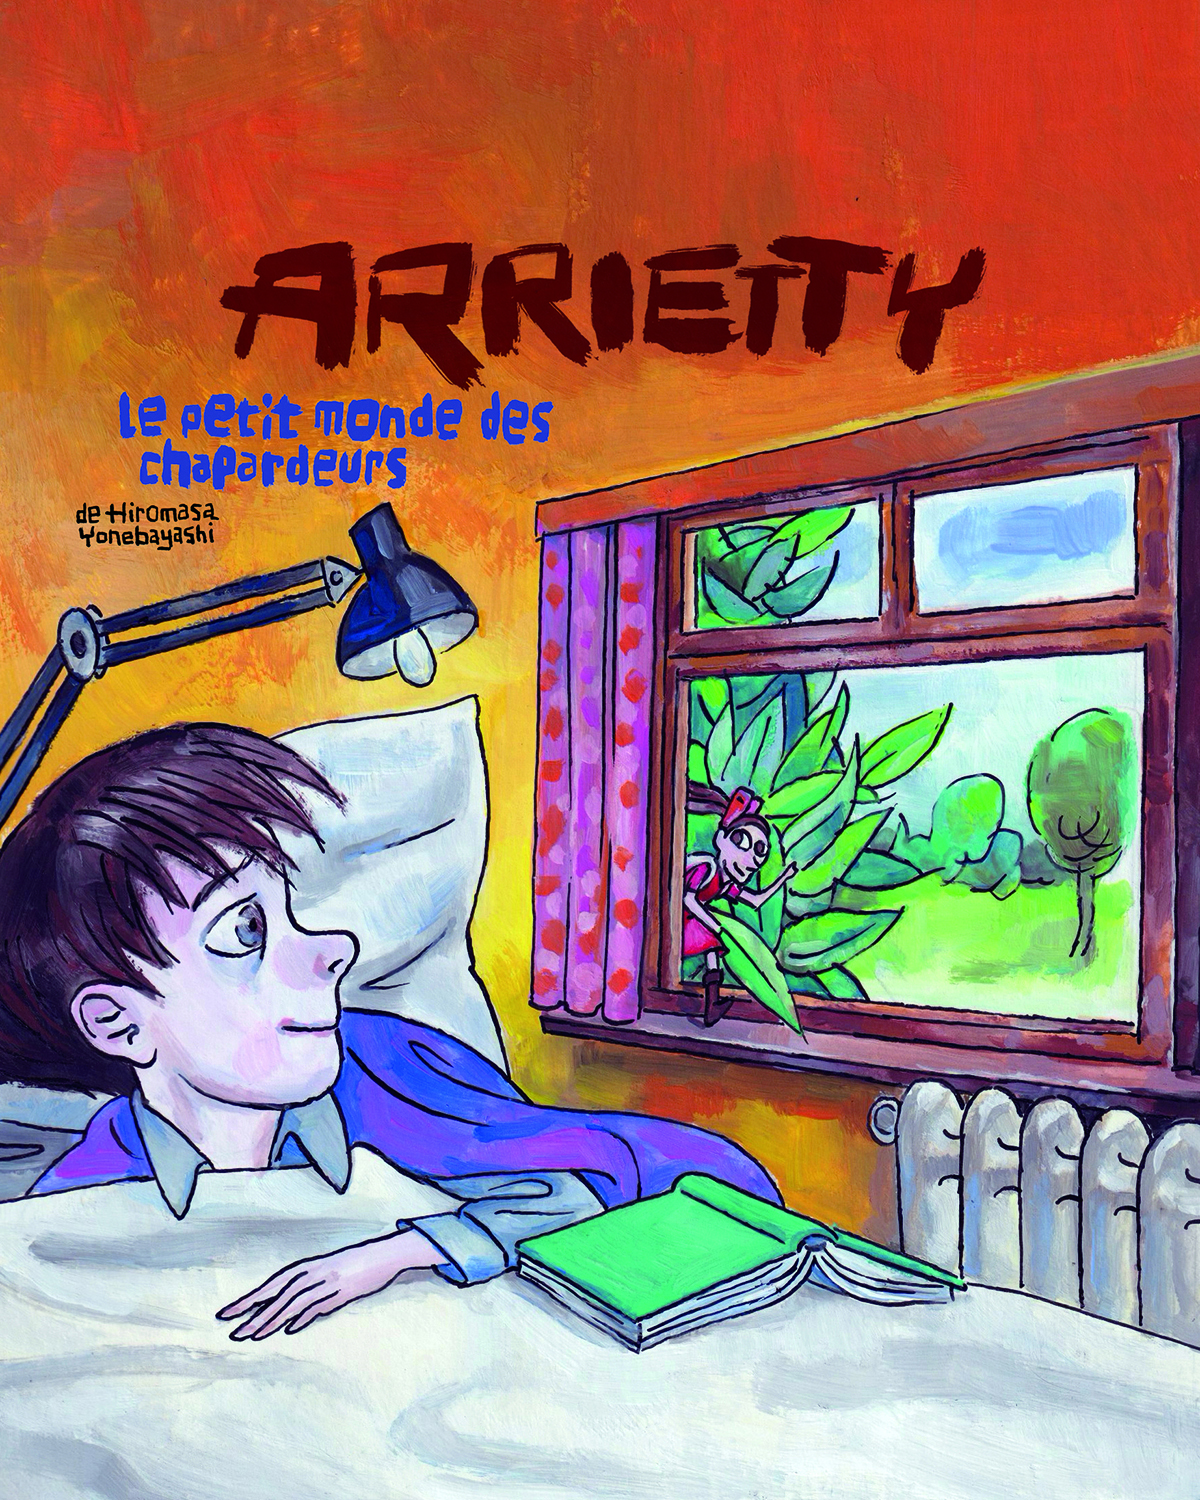 Les enfants pourront découvrir "Arrietty", l’histoire d'une jeune fille minuscule qui vit cachée sous le plancher d’une maison.